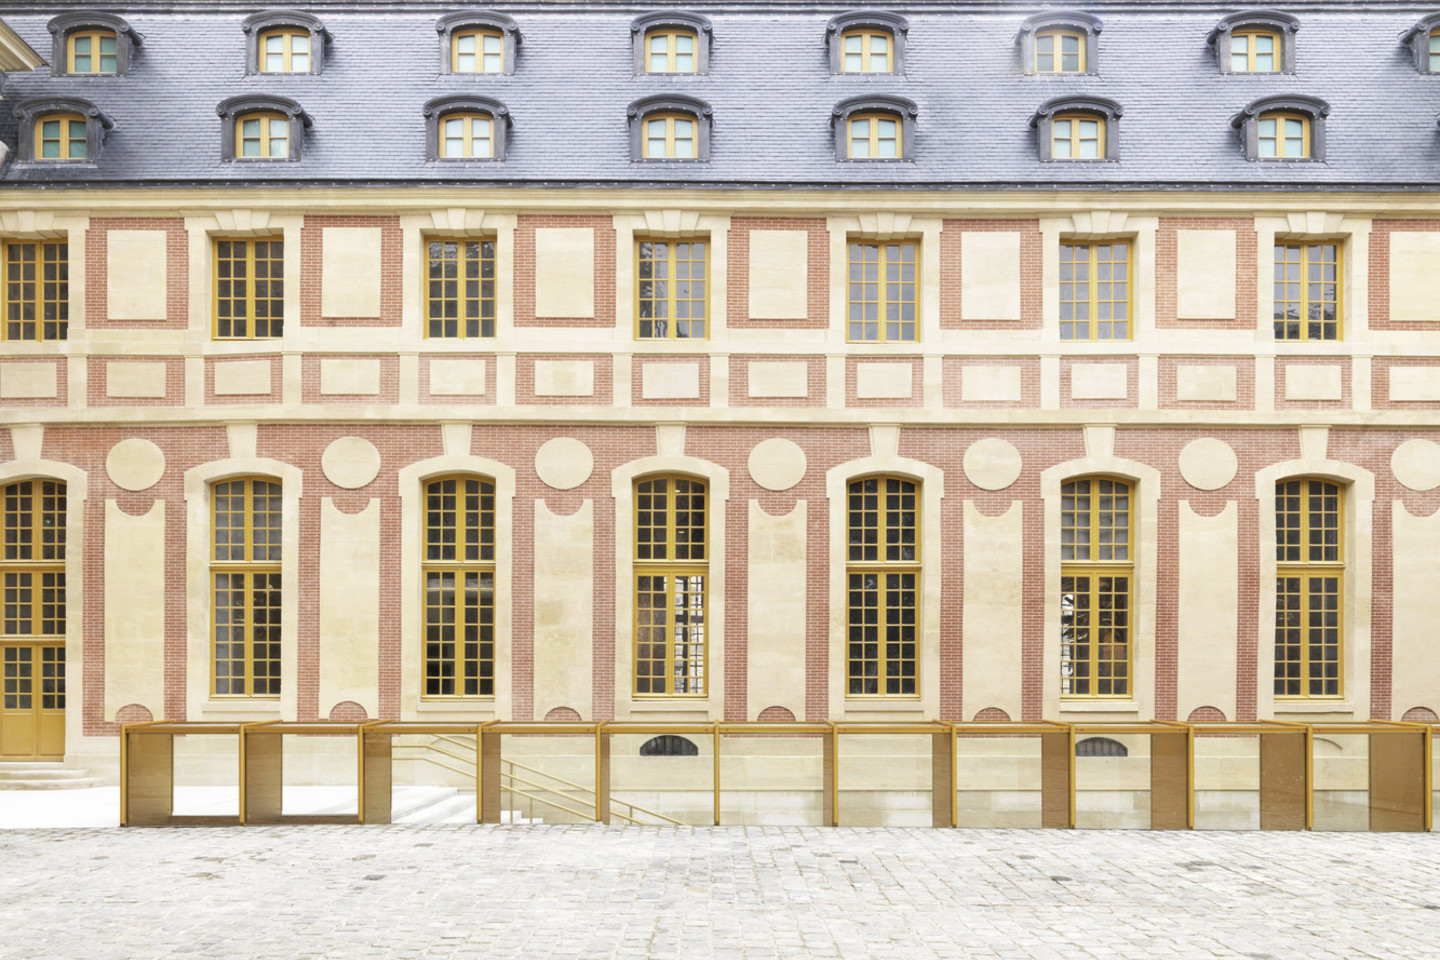 Geriausiai pritaikytas pastatas – Dufour paviljono atnaujinimas Versalio rūmų teritorijoje, Prancūzijoje, autoriai „Dominique Perrault Architecte“<br>„Archdaily“ nuotr.